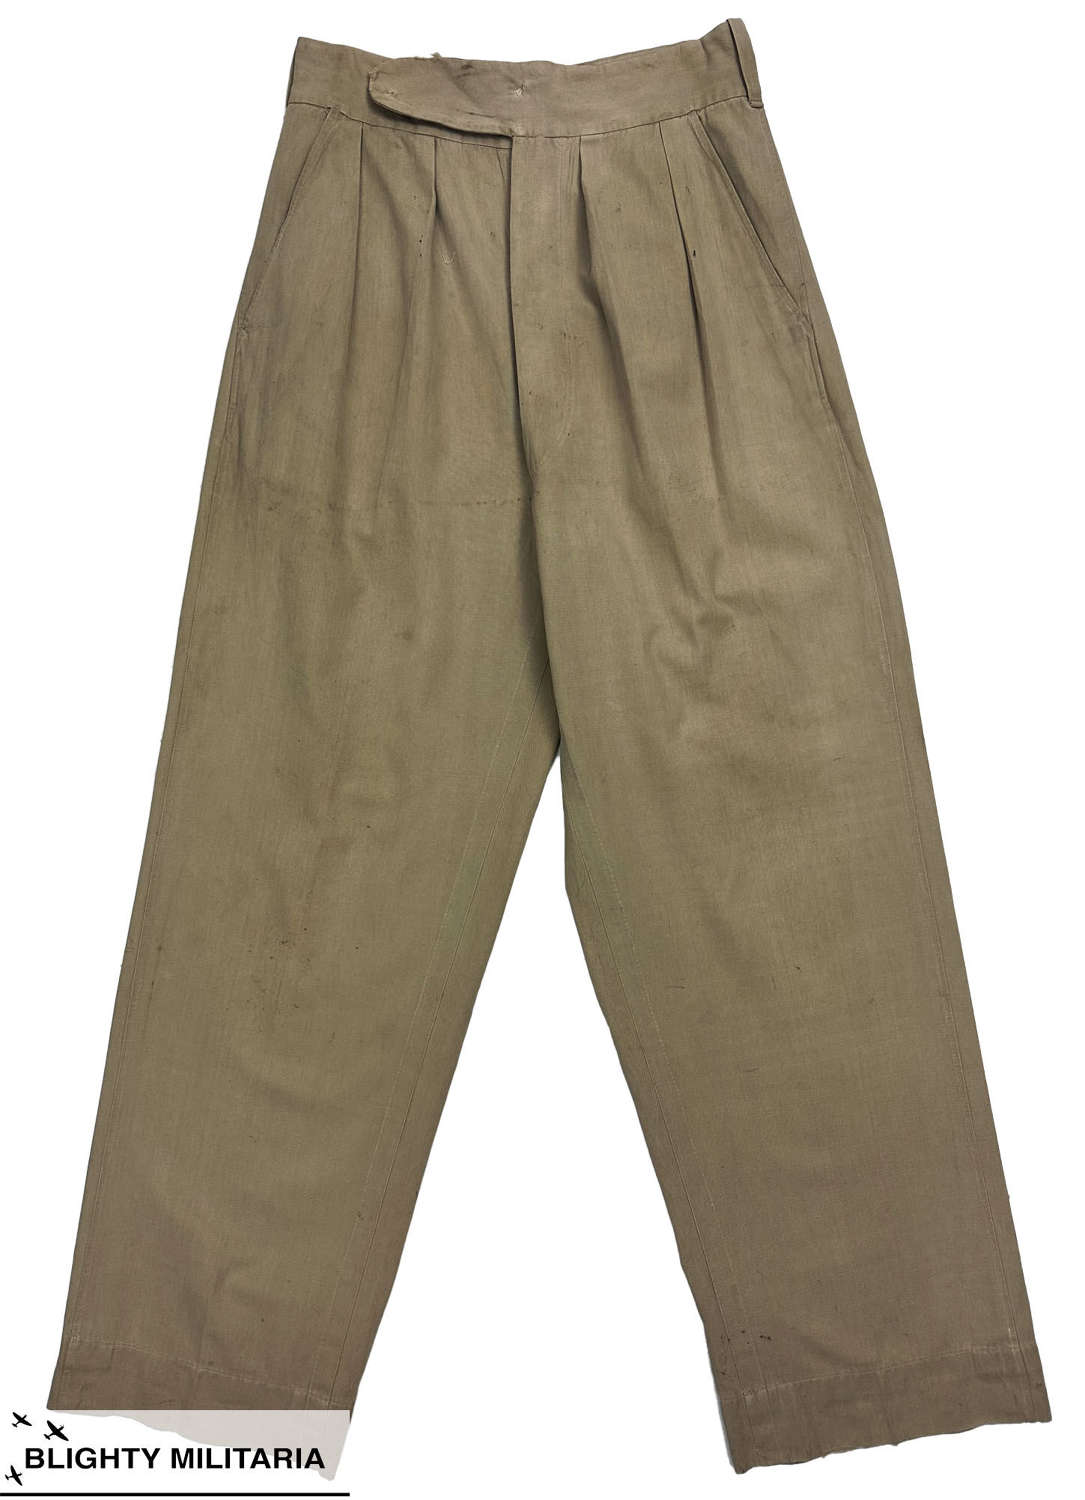 Original 1950s British Men's Linen Trousers - Size 28 x 30.5